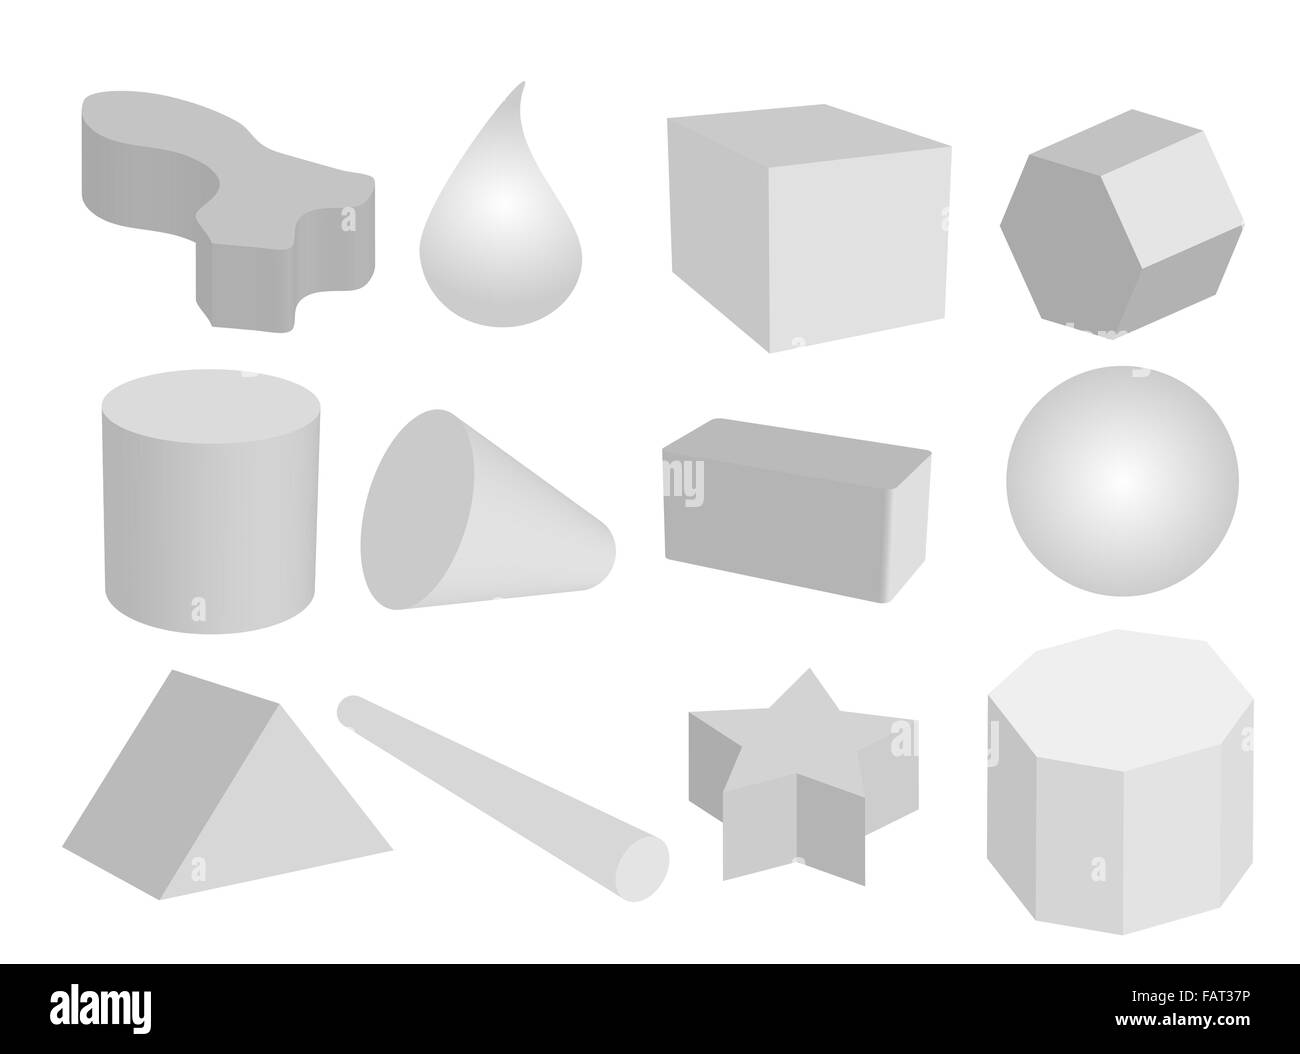 La forma geometrica di colore grigio, gli oggetti o le figure create in una sfera, Triangolo, esagono, cilindro, il cono, la discesa e il cubo Foto Stock